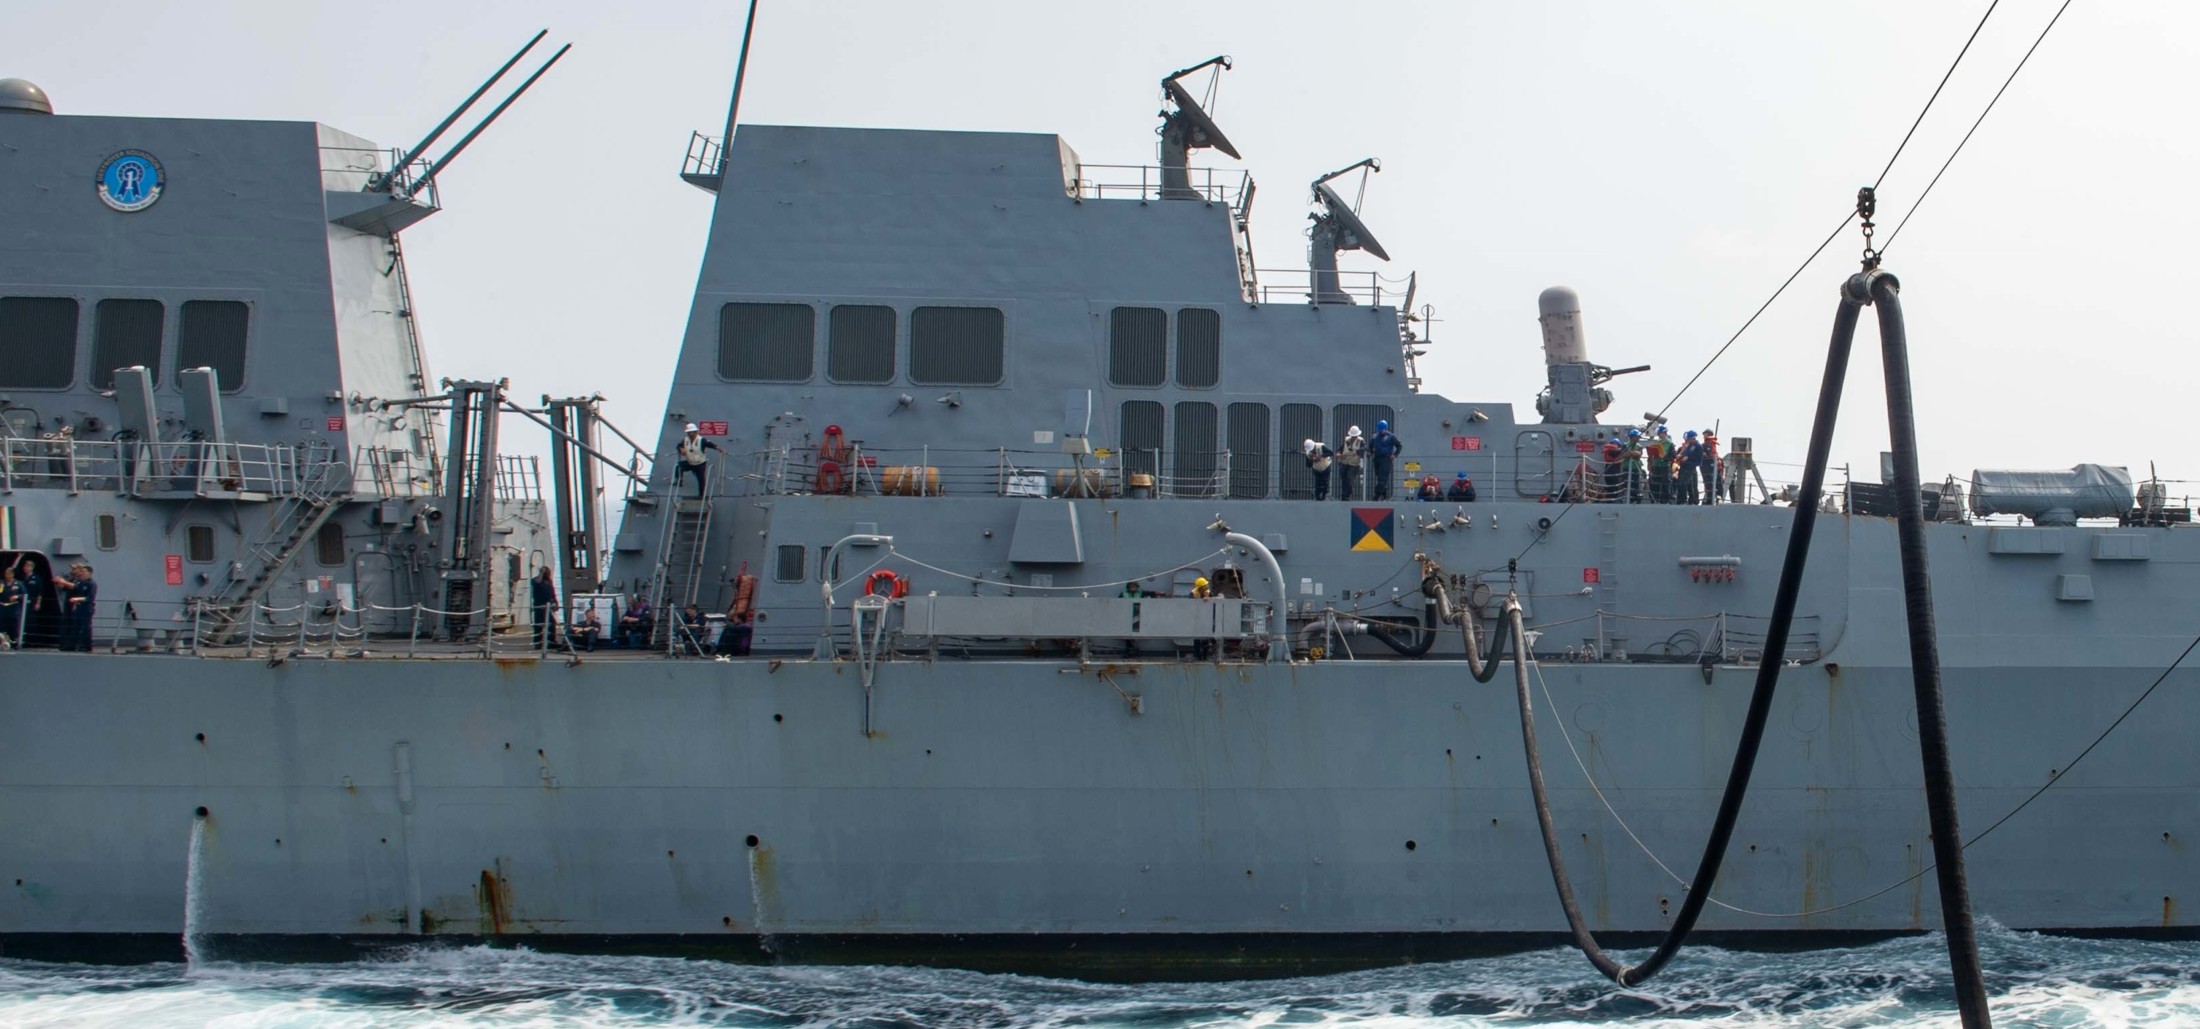 ddg-106 uss stockdale arleigh burke class guided missile destroyer aegis us navy replenishment ras 145